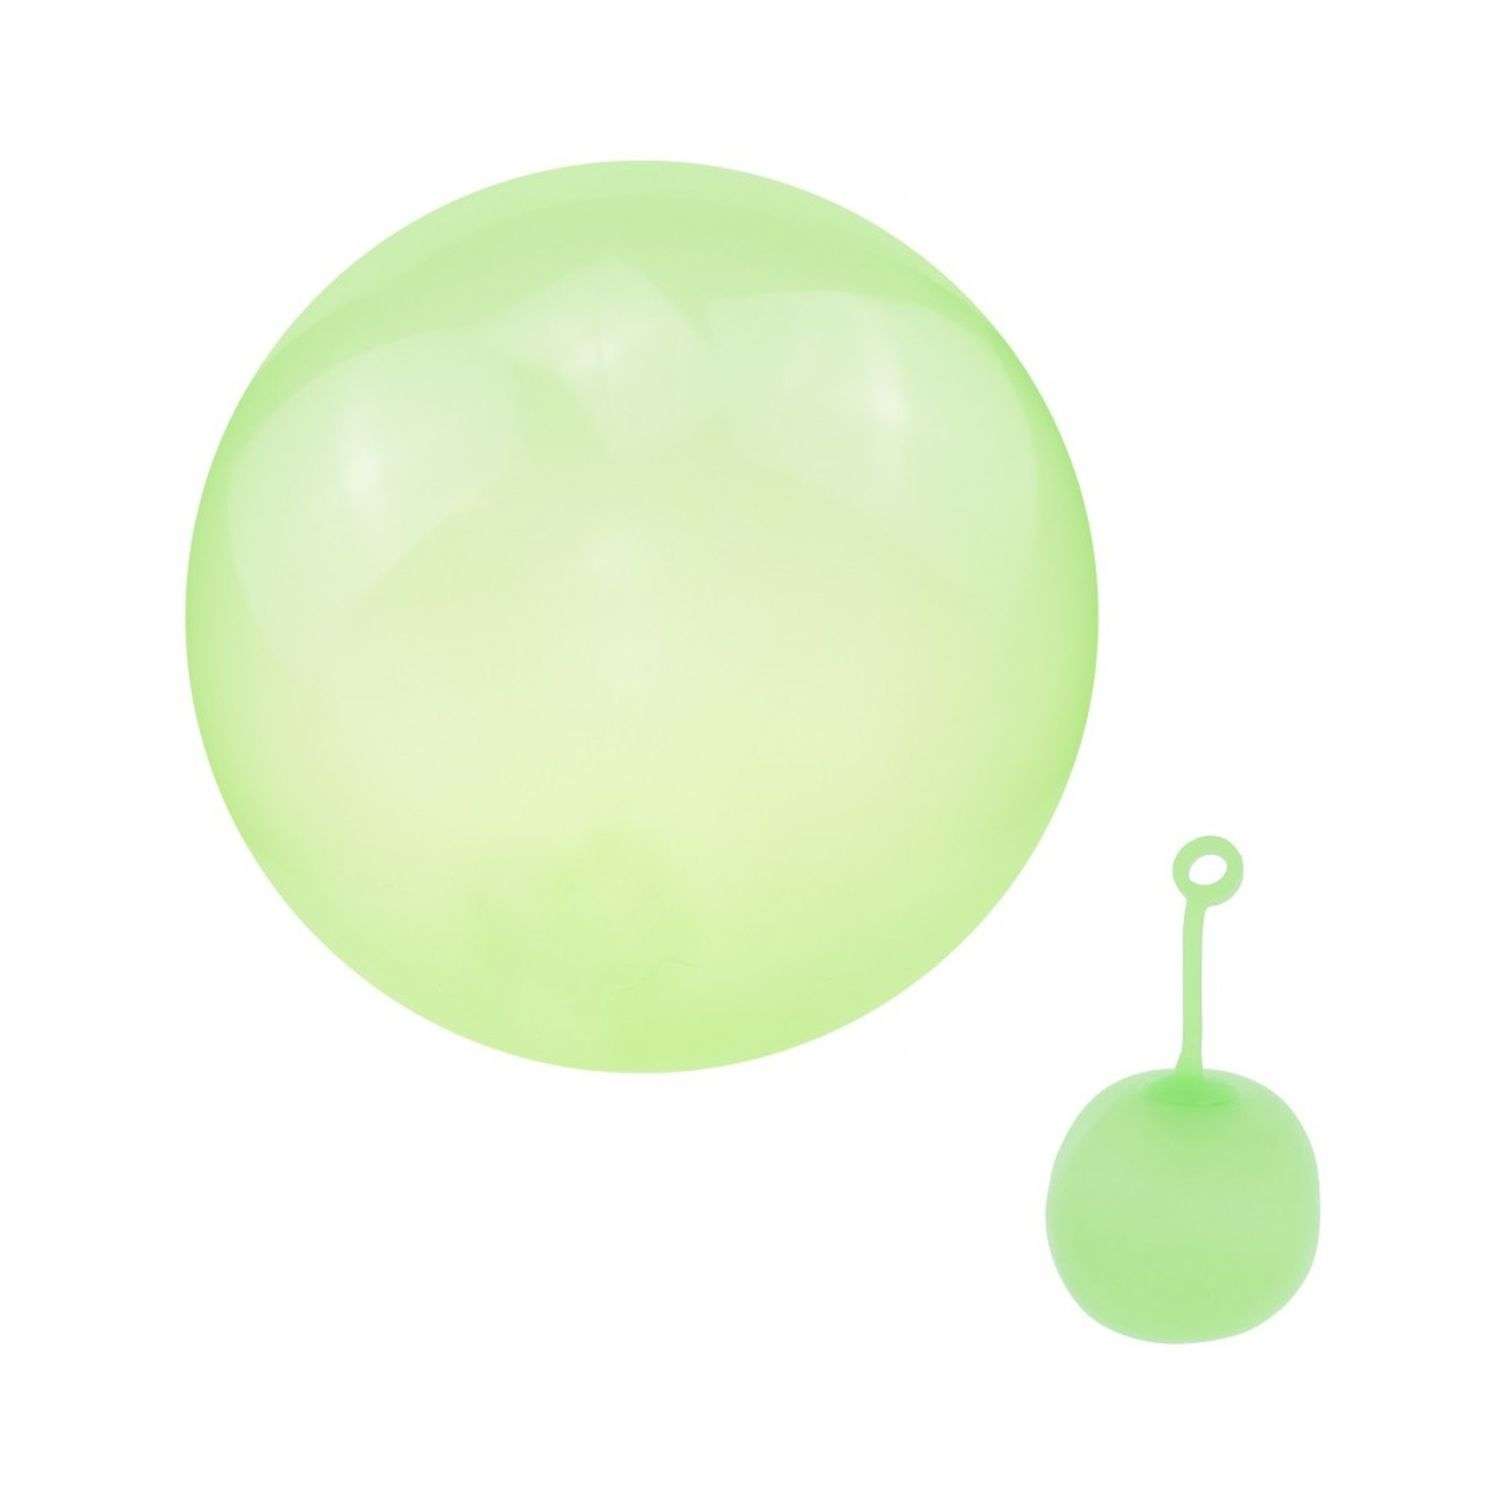 Суперпрочный надувной шар Seichi 45 см зеленый - фото 2